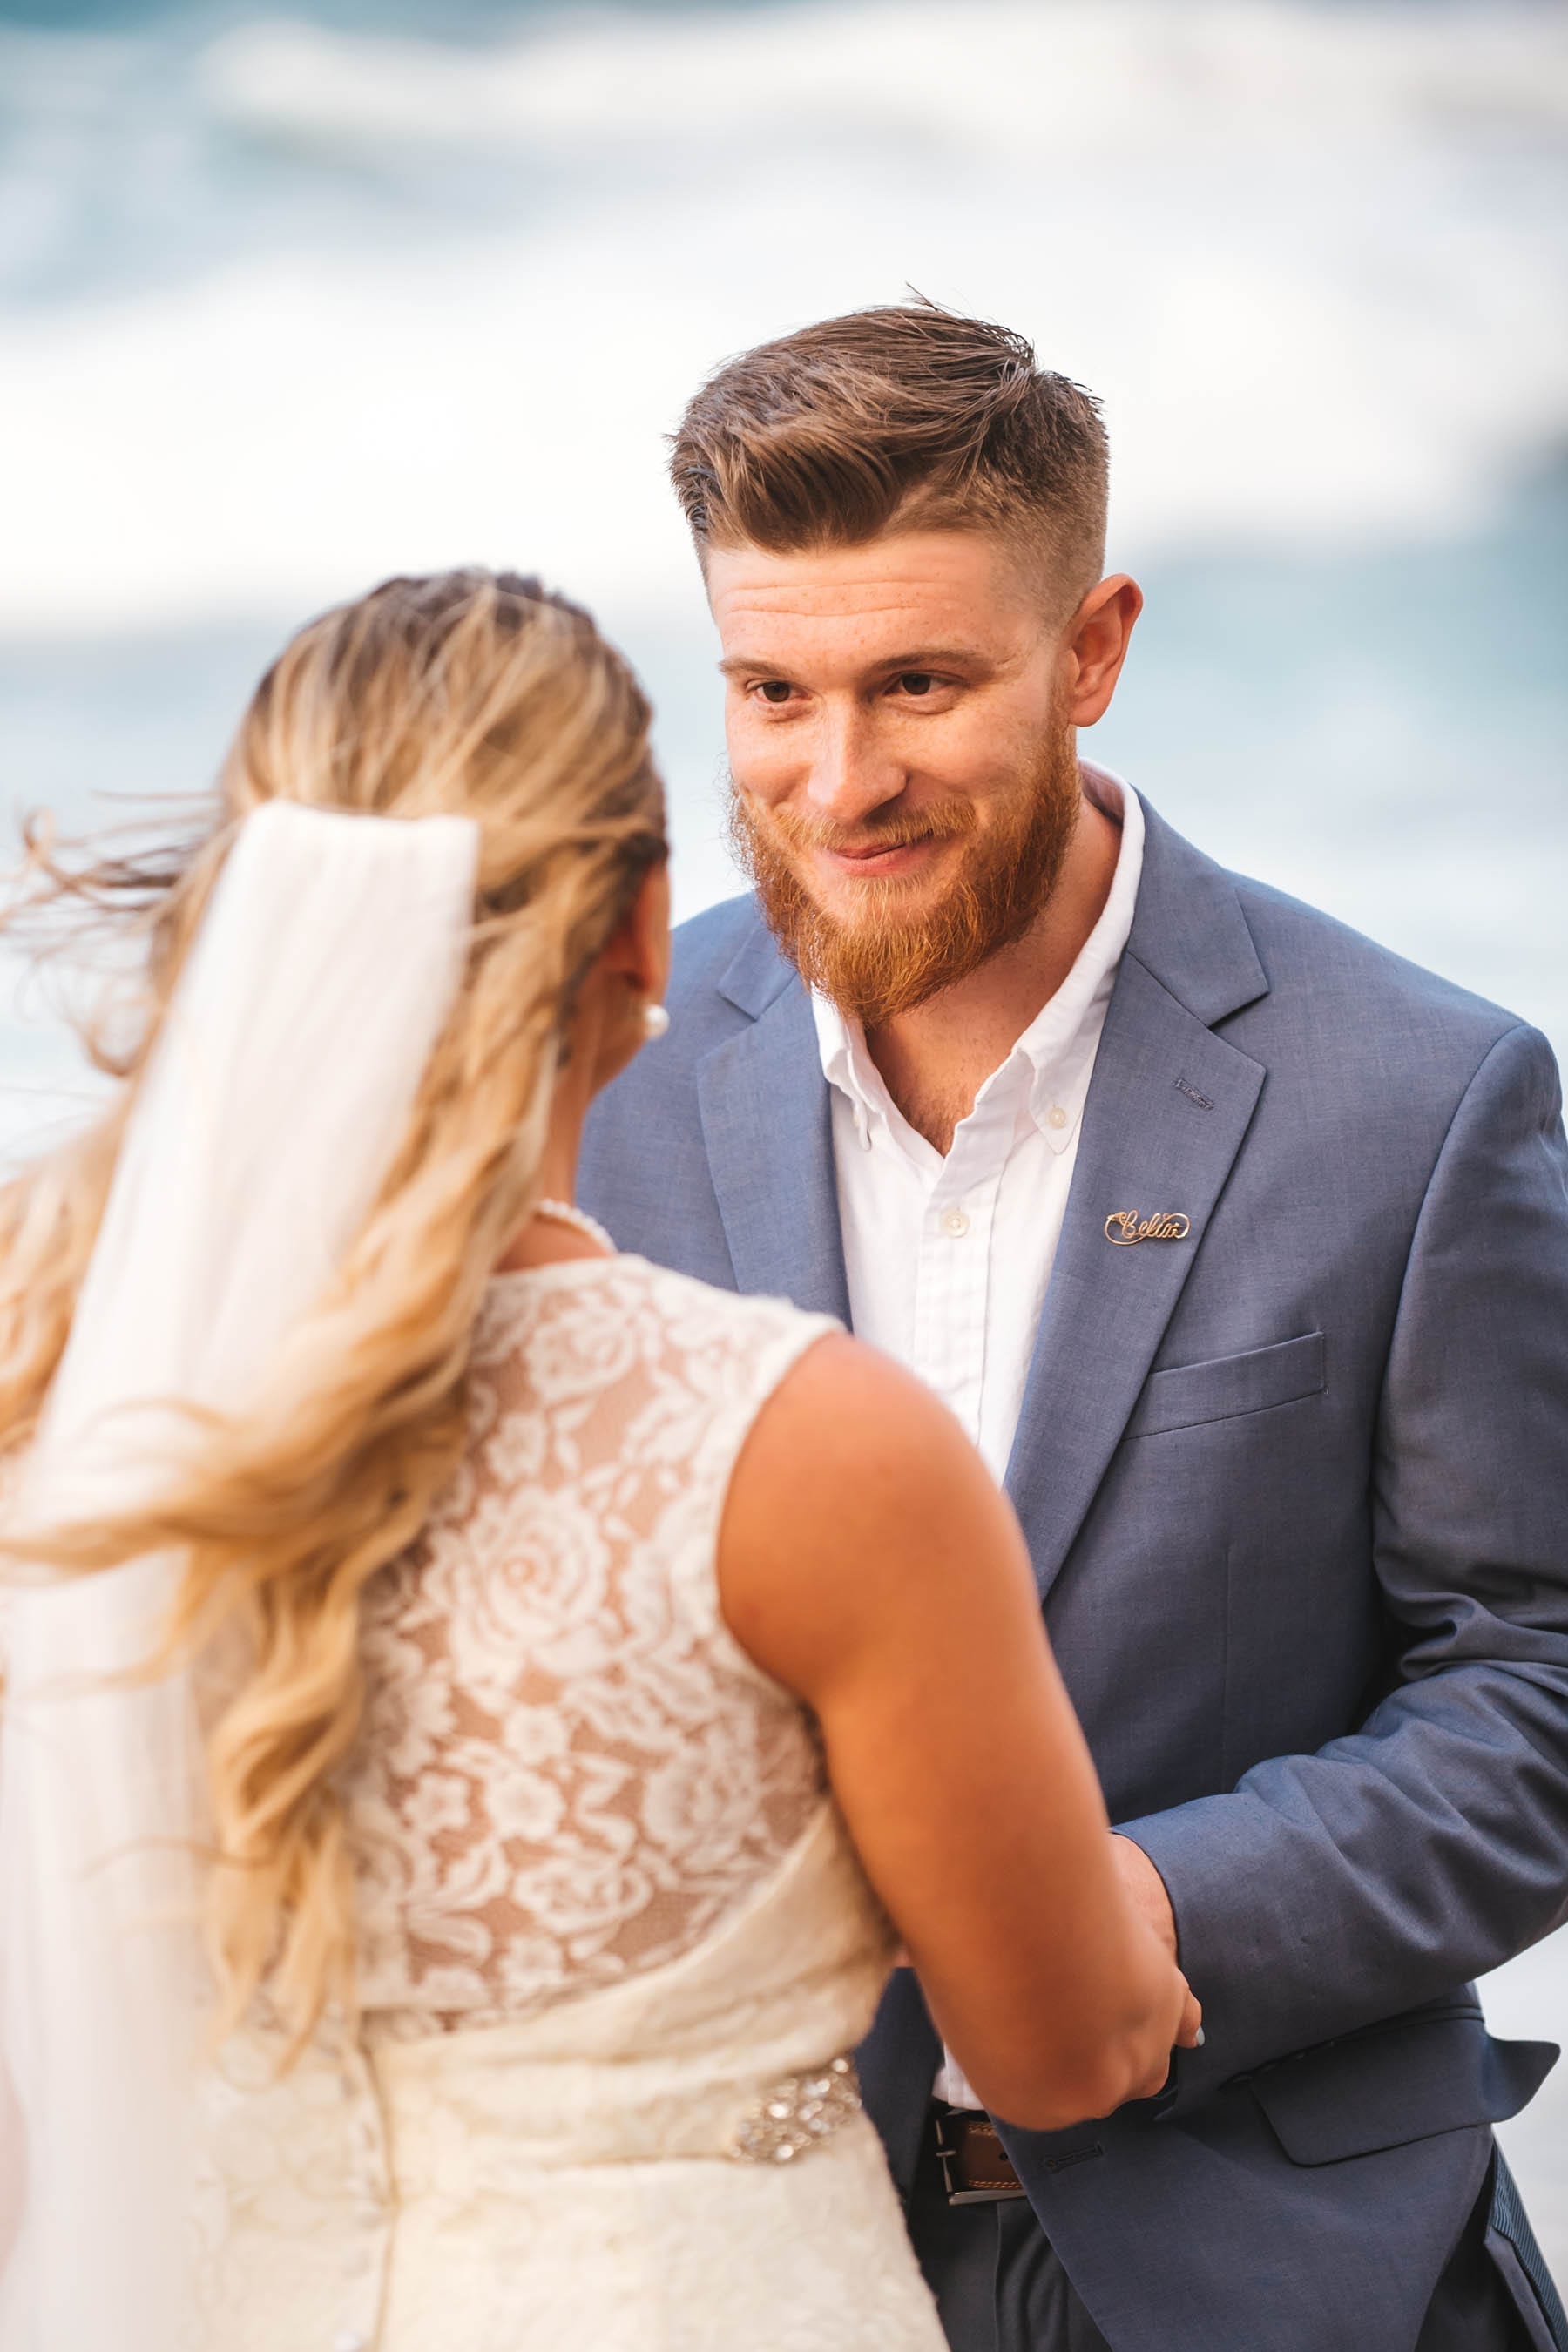 Maui beach wedding ceremony photos